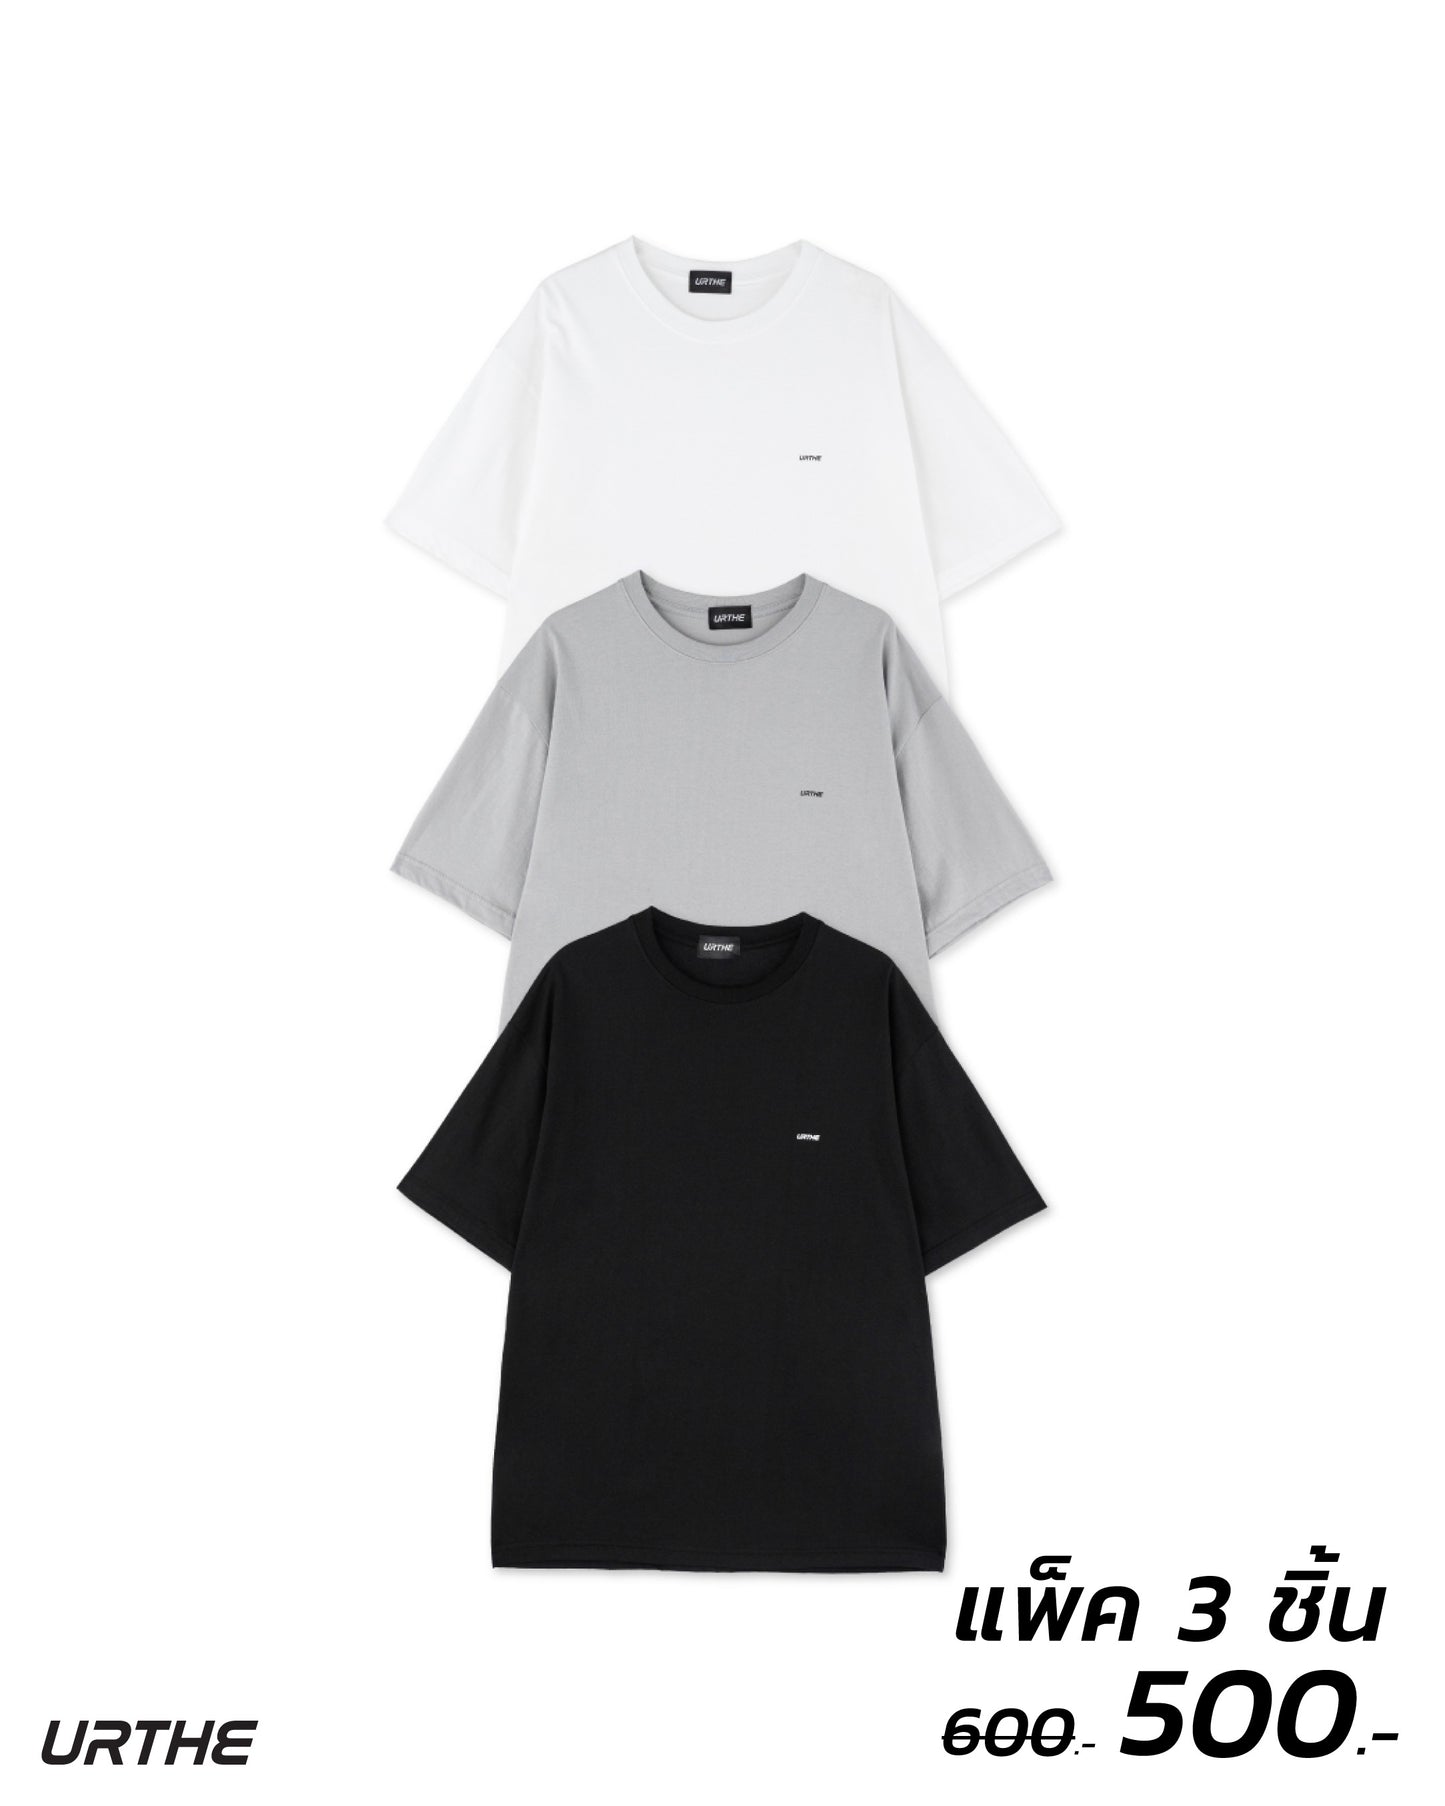 URTHE - เสื้อยืด เเพ็ค 3 ตัว ดำ ขาว เทา สกรีนลาย รุ่น HAPPY DEALS